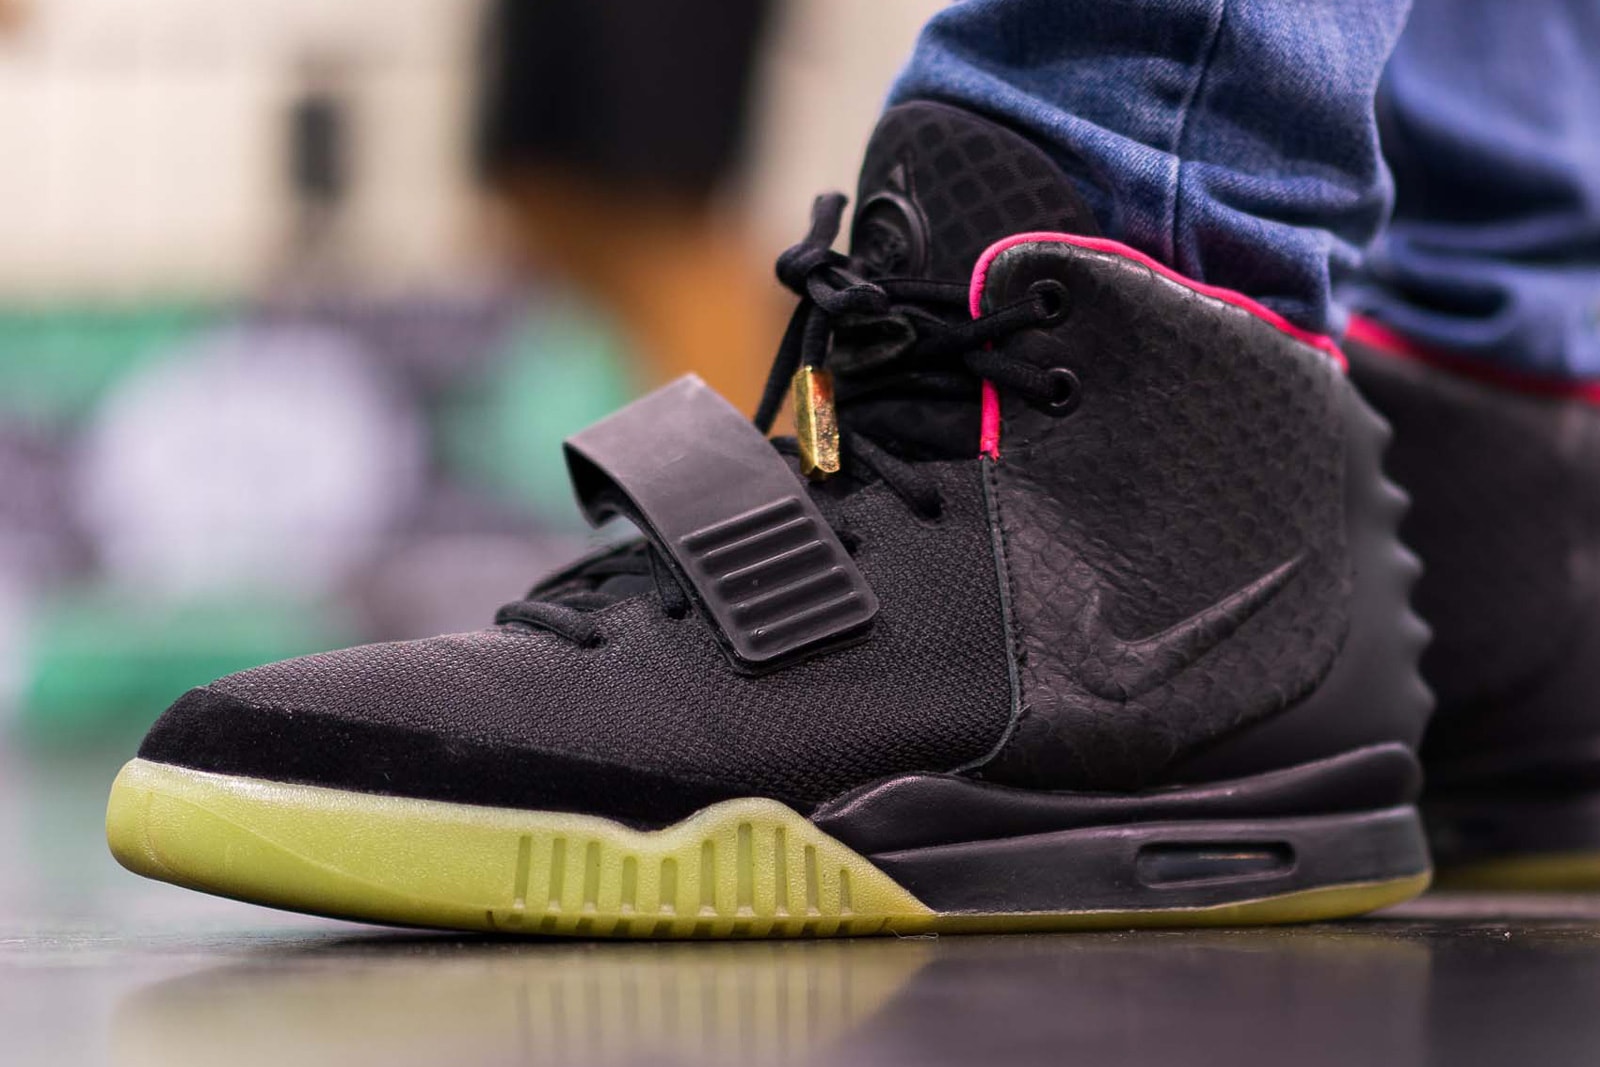 OnFeet Looks Sneaker Con Los Angeles 2017 Nike Air Jordan 4 KAWS adidas Yeezy Kanye West